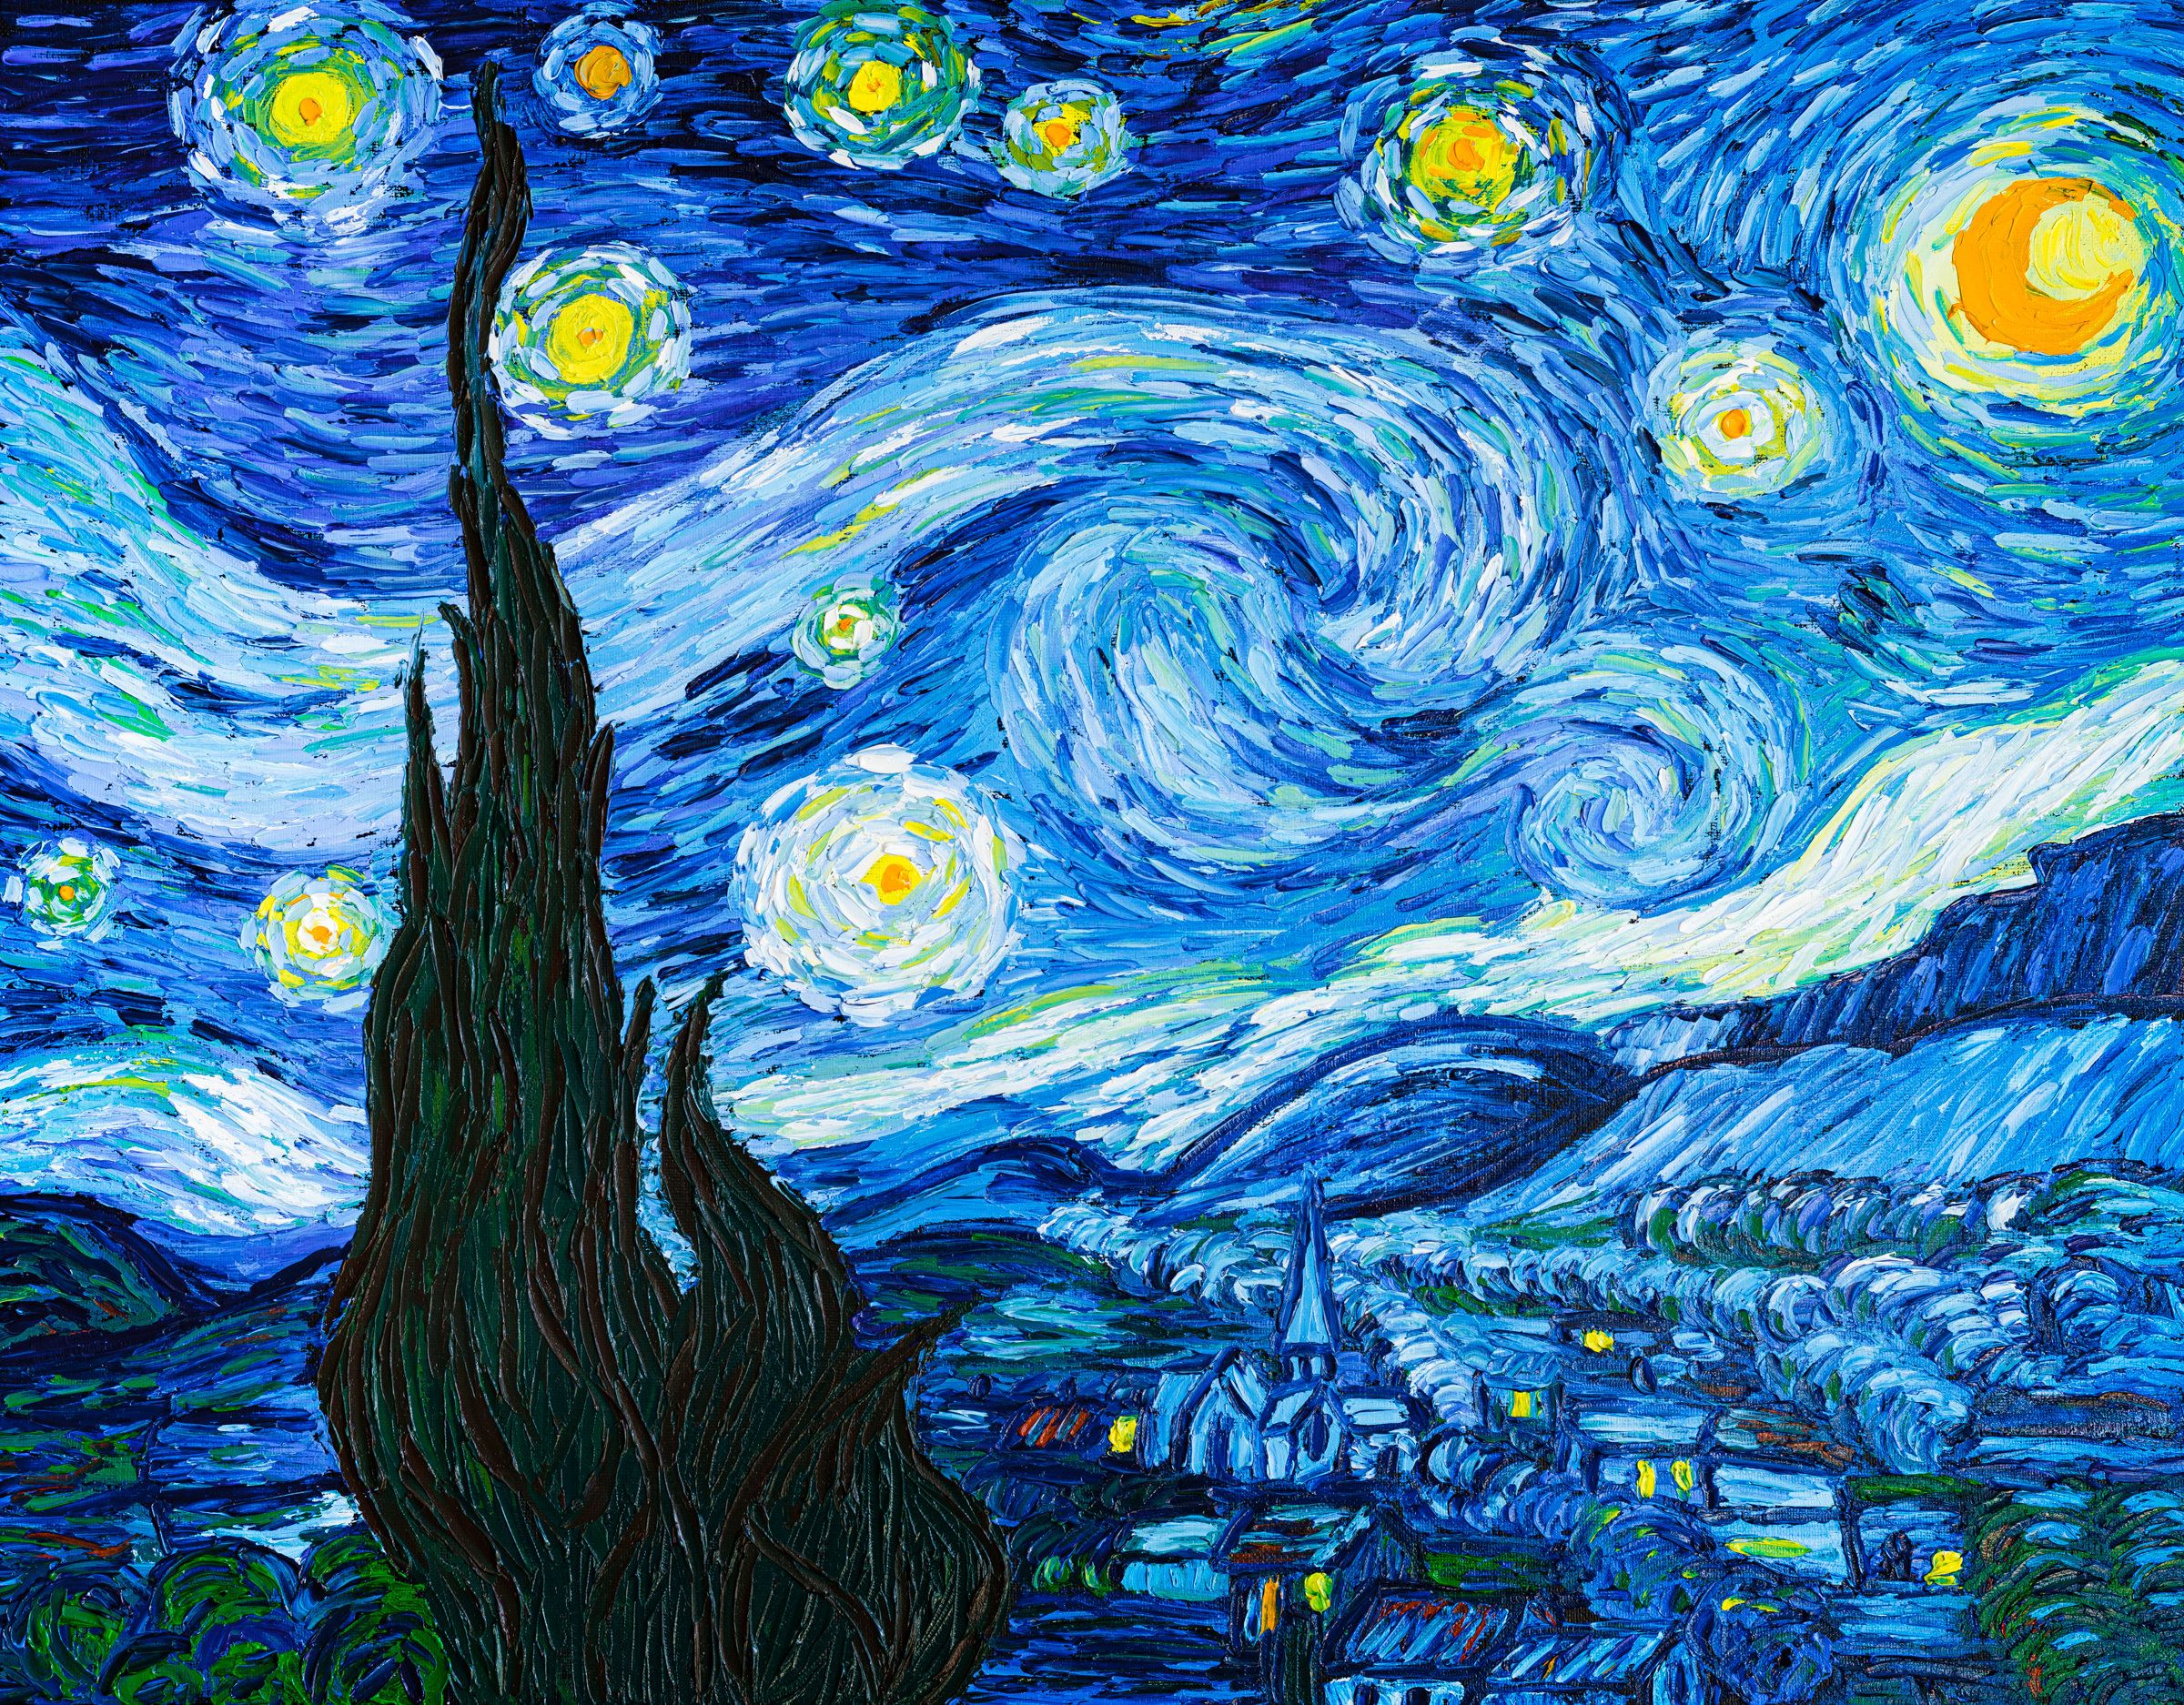 What Makes Vincent van Gogh's Artwork So Unique? - Pinot's Palette